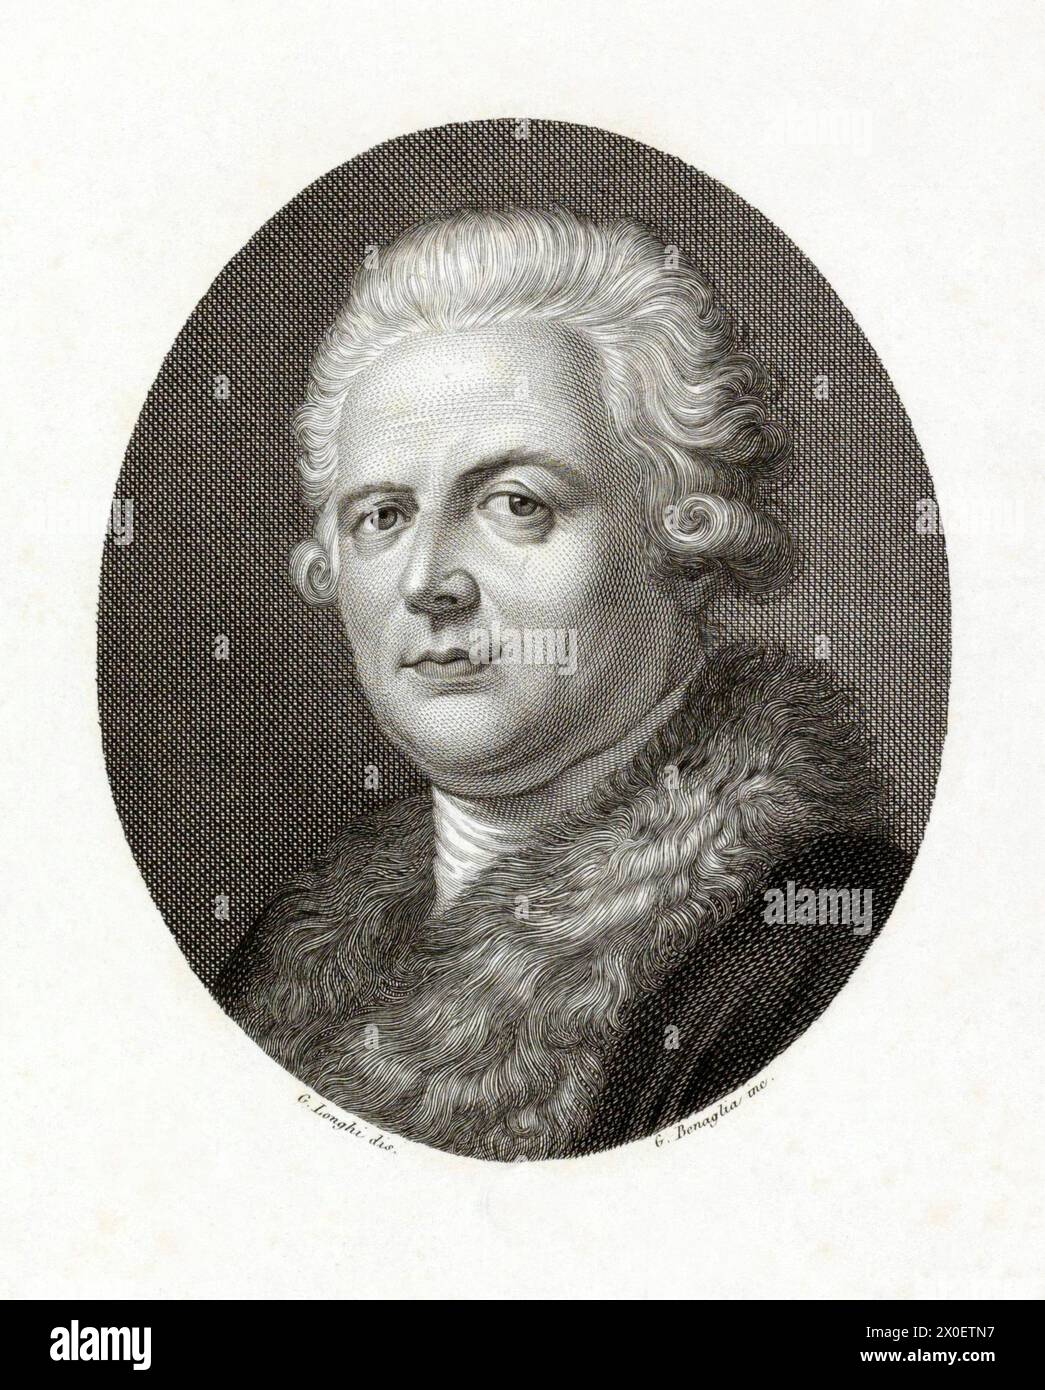 1795 c., Milan , ITALIE : le noble illuministe italien , écrivain , économiste , philosophe et historien PIETRO VERRI ( 1728 - 1797 ) . Portrait gravé par G. Benaglia à partir du dessin original de G. Longhi , imprimé à Milan par N. Bettoni , XIX siècle . - CONTE - ILLUMINISMO - ILLUMINISM - ILLUMINISTA - HISTOIRE - FOTO STORICHE - ITALIA - ECONOMIE - ECONOMISTA - FILOSOFIA - PHILOSOPHIE - FILOSOFO - SCRITTORE - LETTERATURA - STORICO - LITTÉRATURE - LETTERATO - INCISIONE - ILLUSTRAZIONE - GRAVURE ILLUSTRATION - NOBLESSE ITALIENNE - NOBILTÀ ITALIANA - nobile italiano - perruque - parrucca Banque D'Images